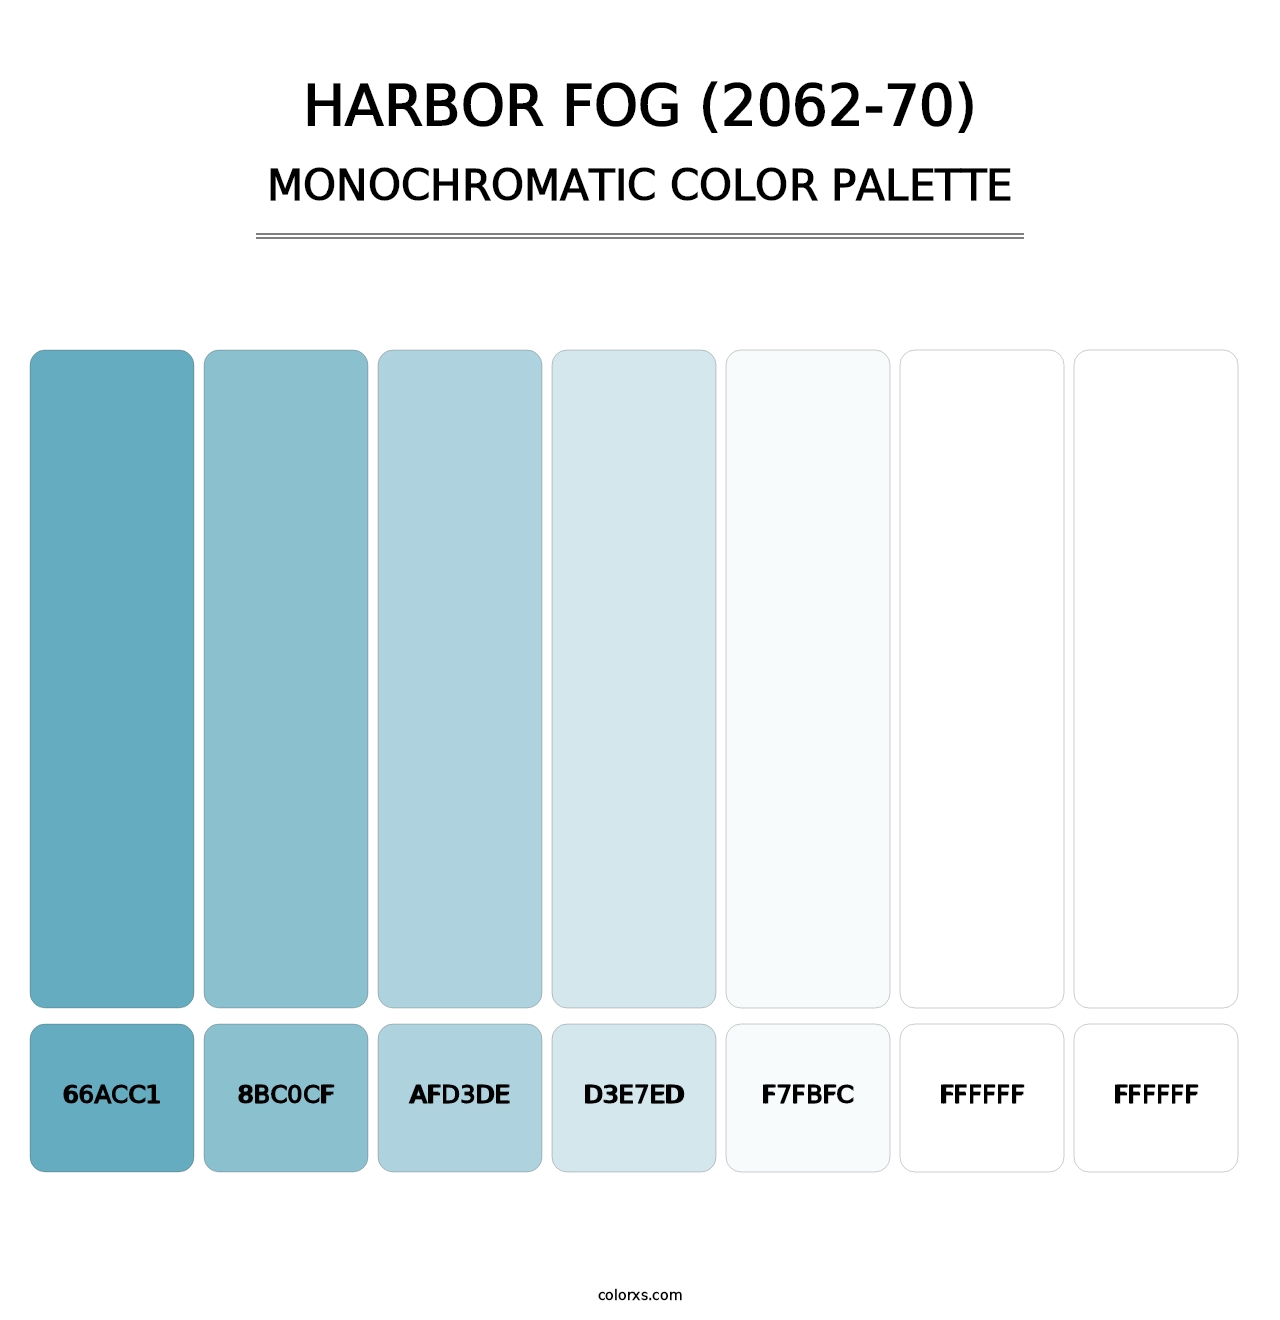 Harbor Fog (2062-70) - Monochromatic Color Palette